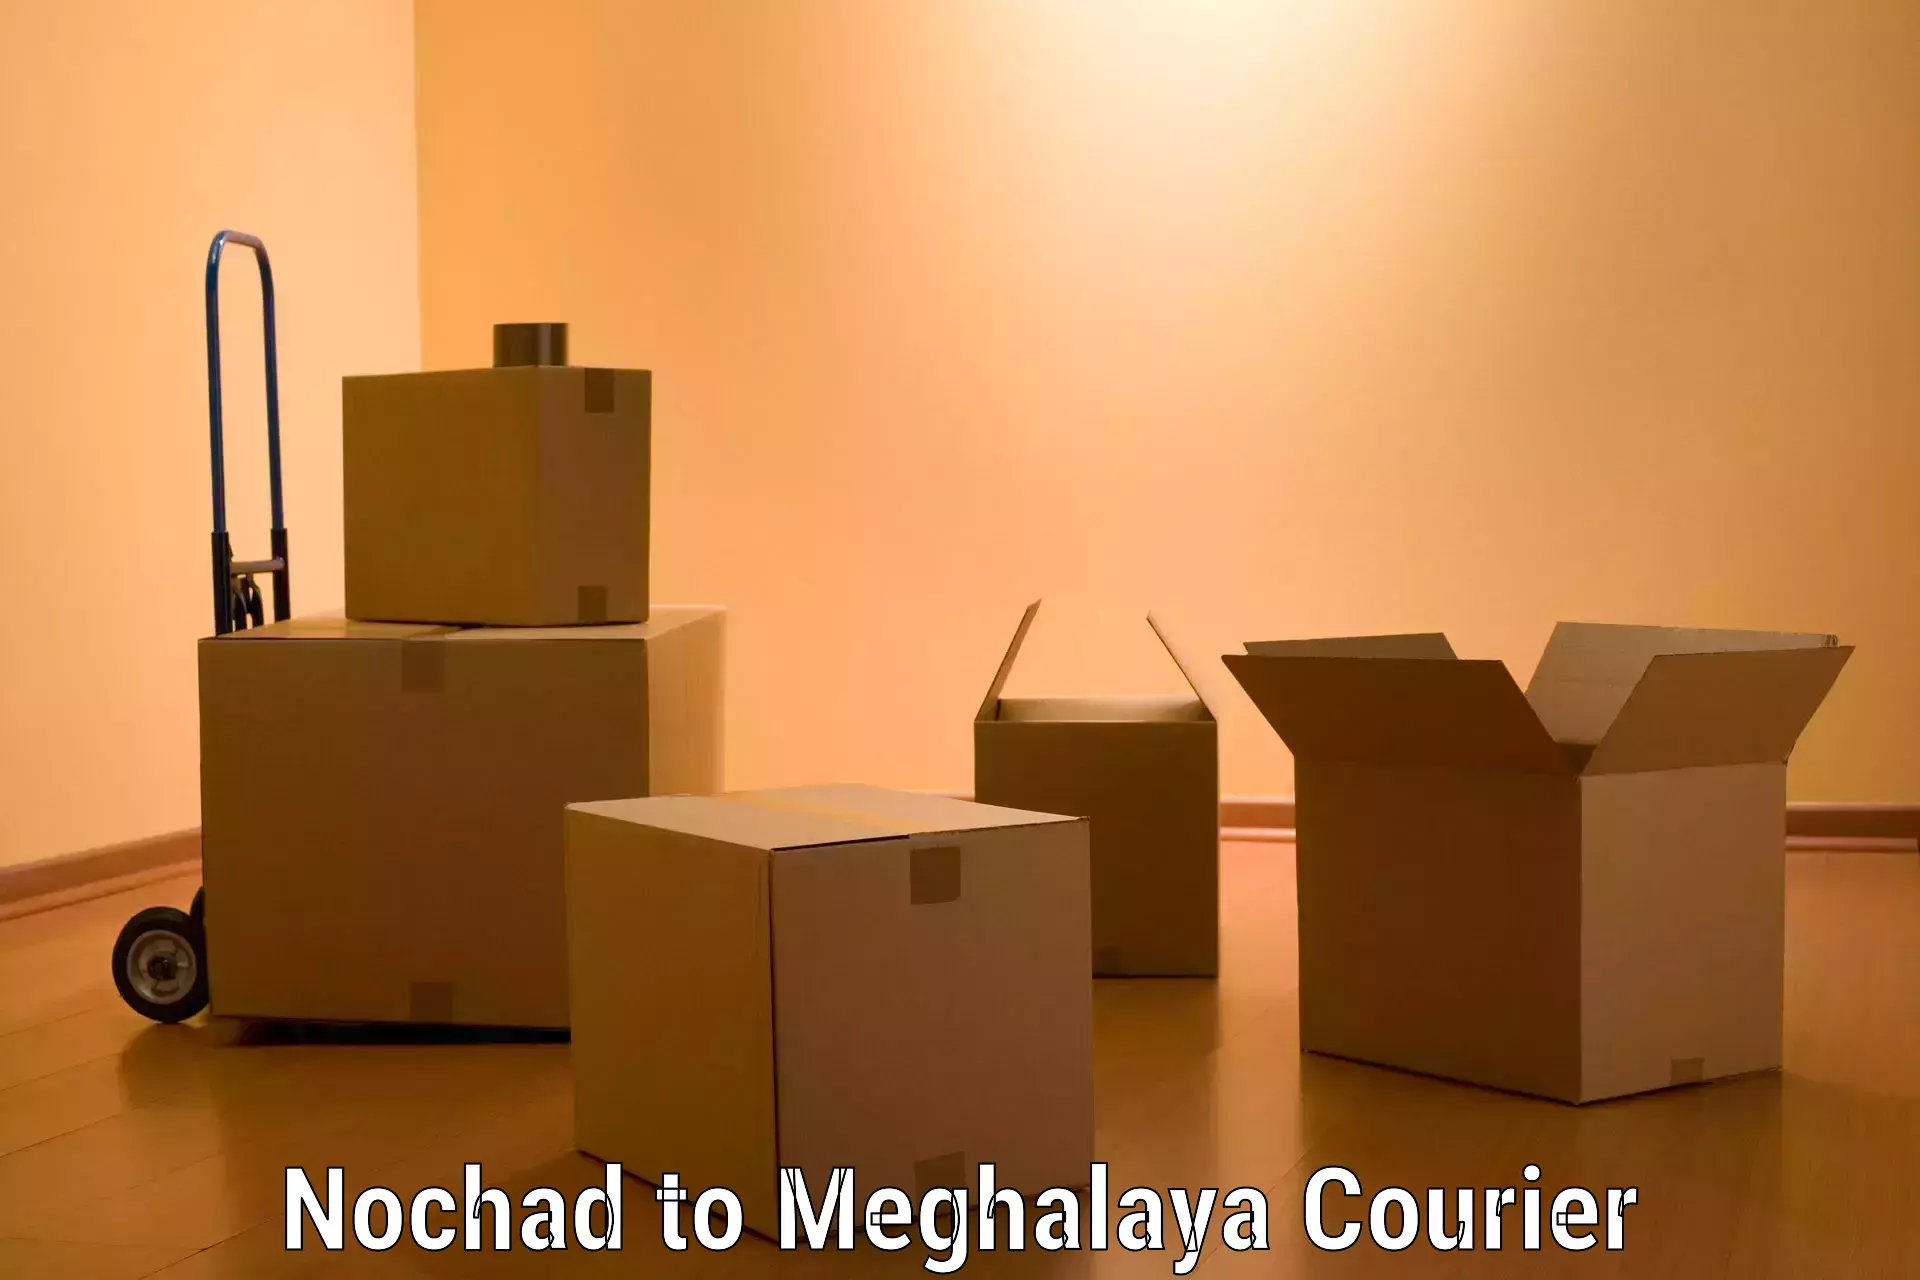 Furniture moving plans Nochad to Meghalaya